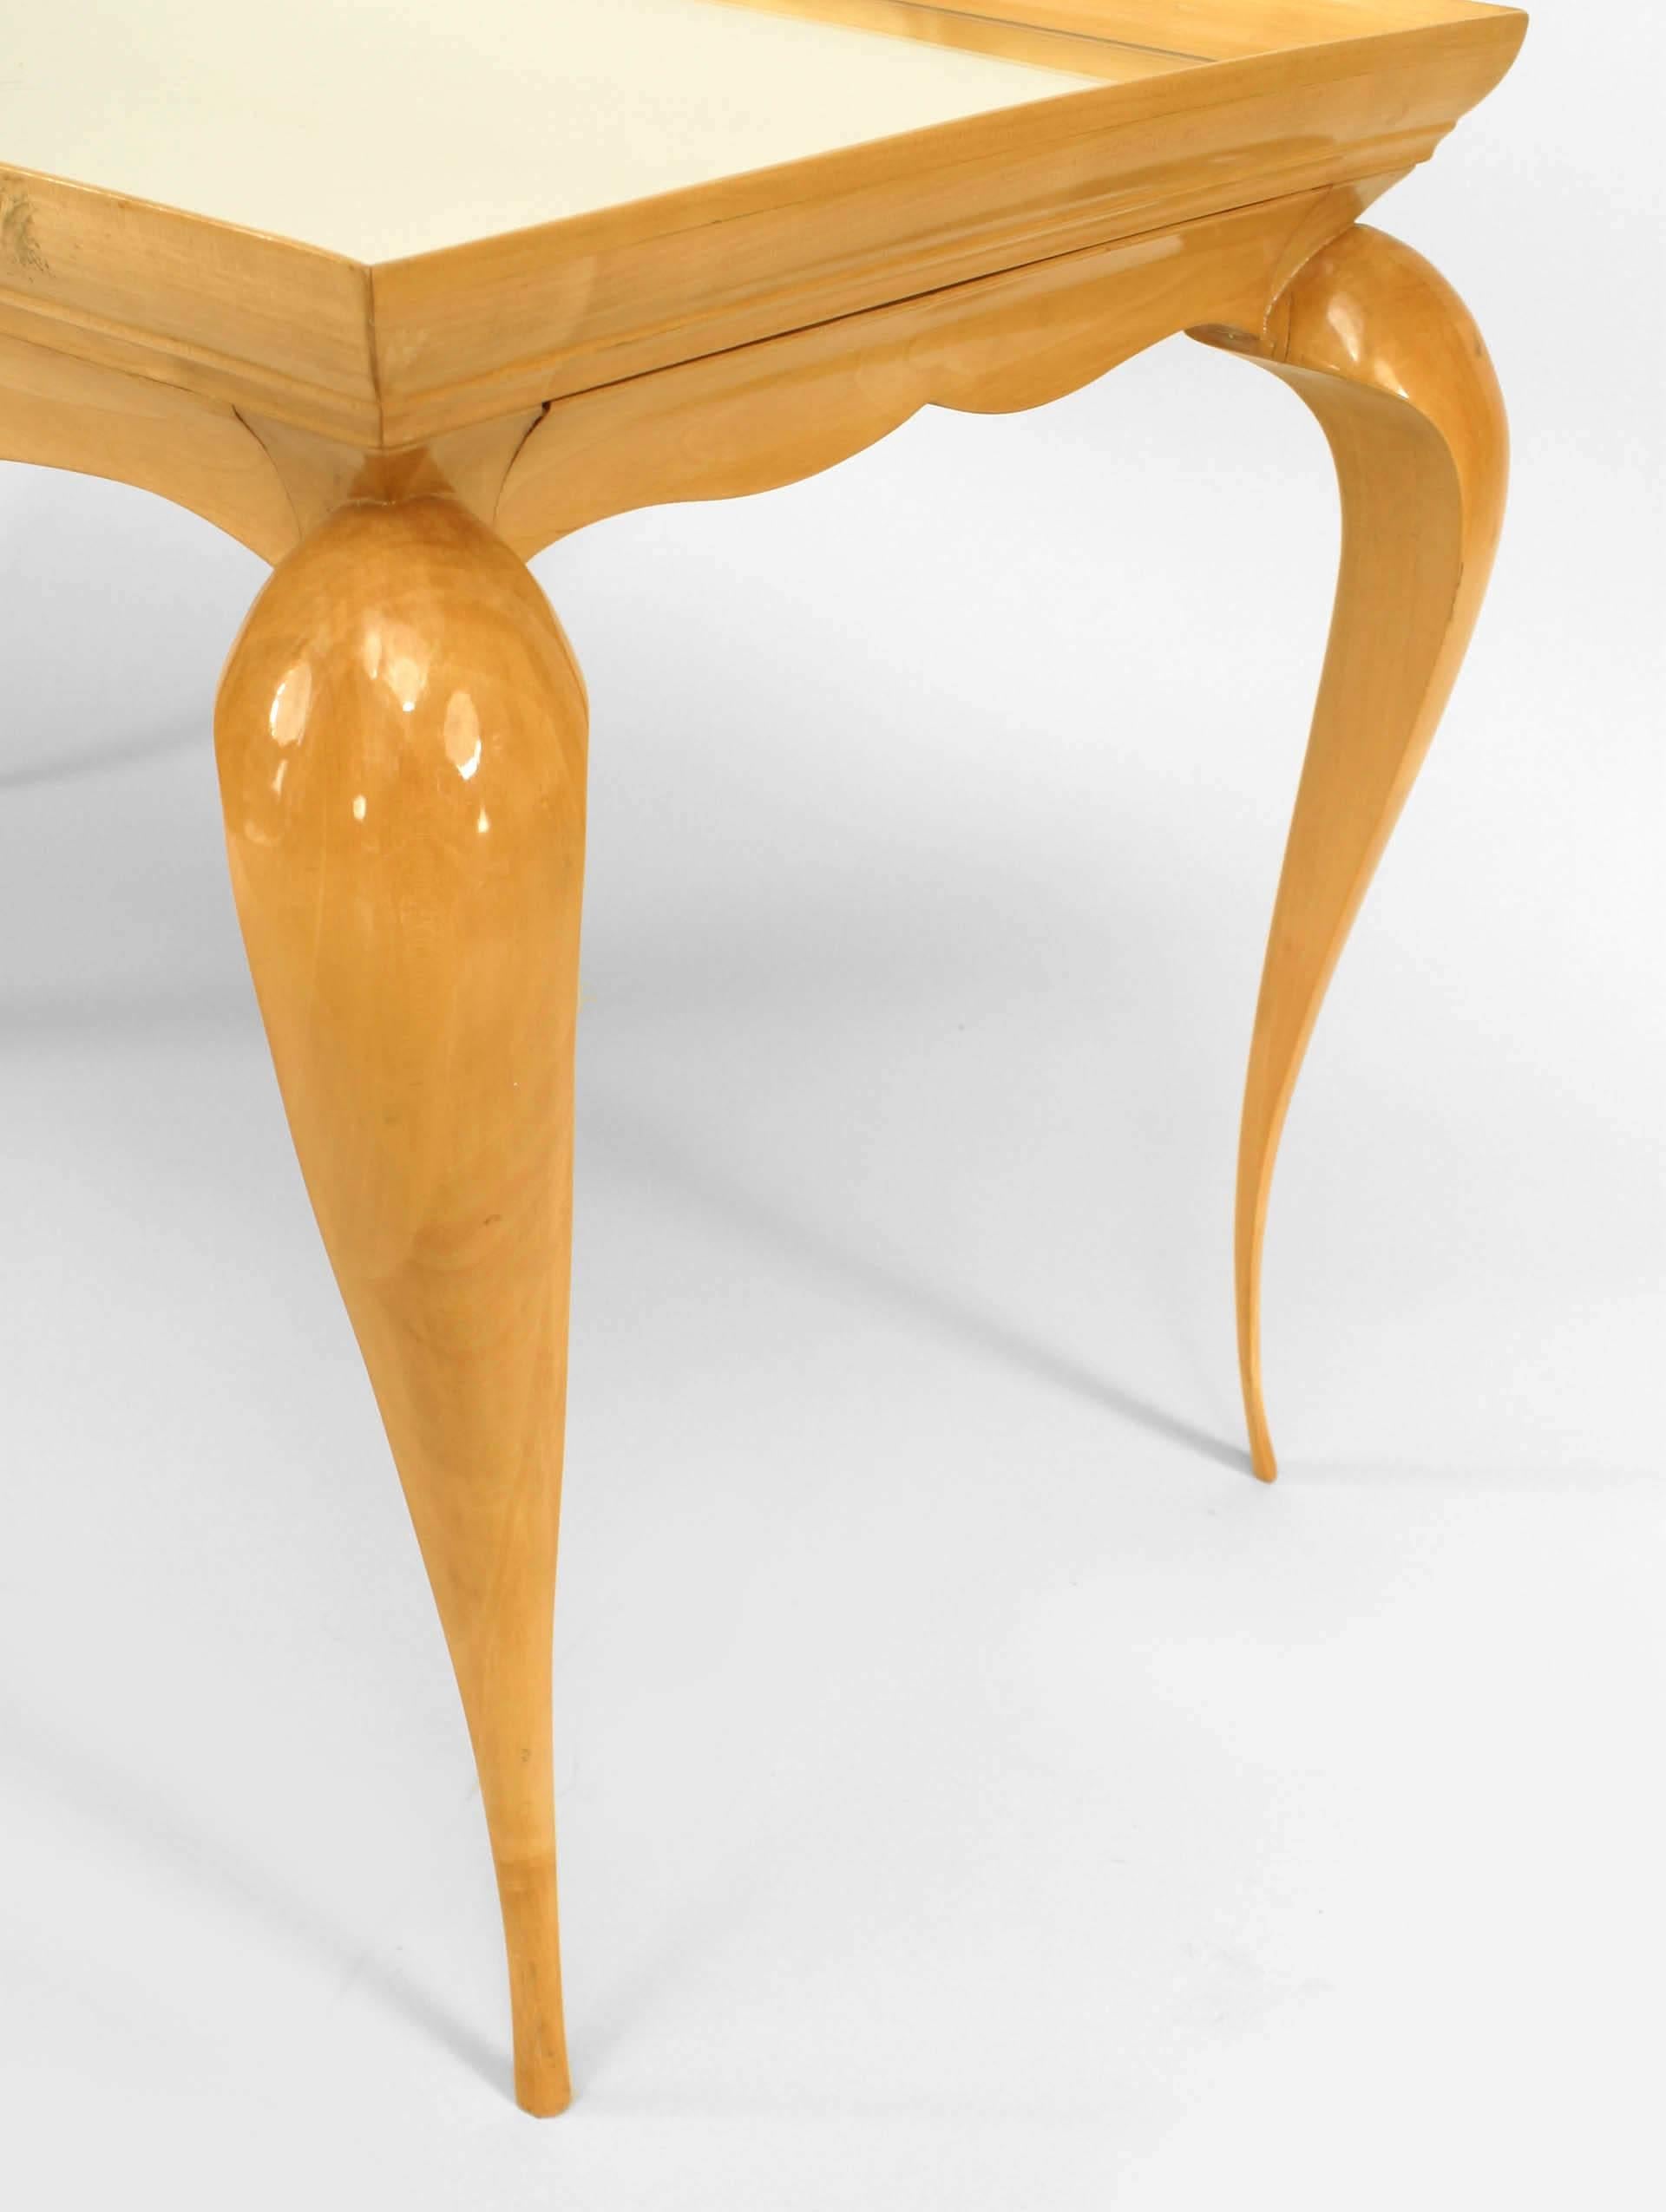 Table basse rectangulaire en sycomore des années 1930, avec des pieds cabriole effilés, un plateau en miroir et un tablier en forme.
